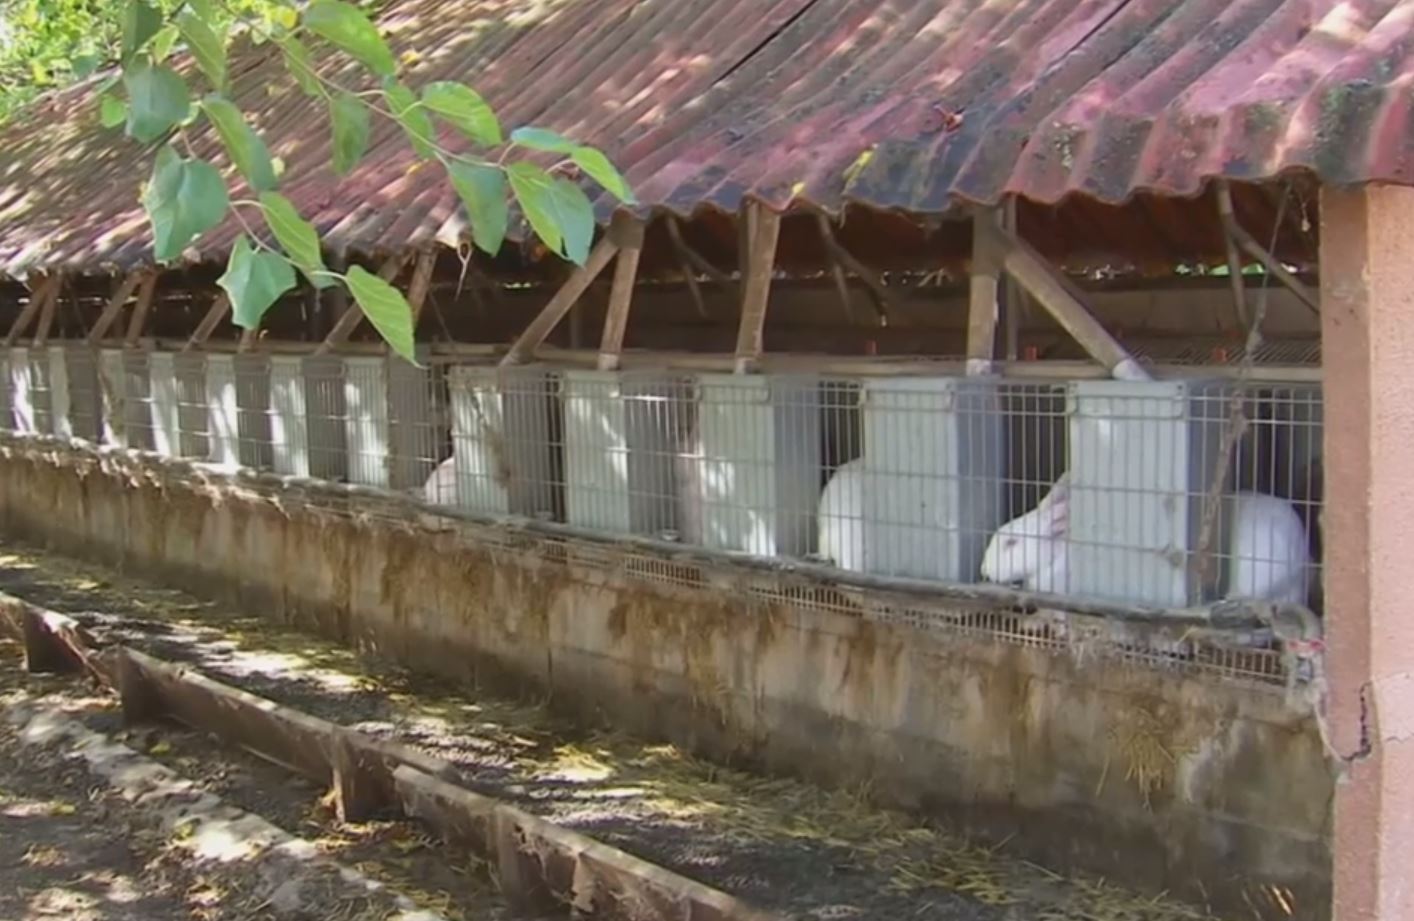 Rabbits at Gurb farm raided by animal rights group